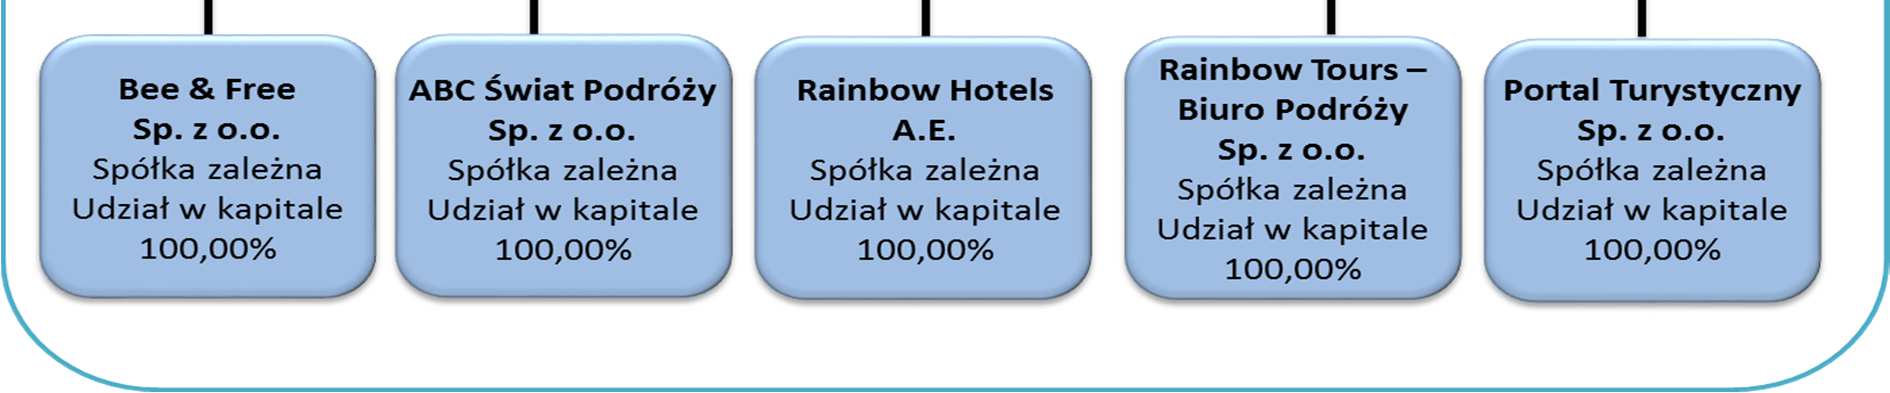 Sprawozdanie z działalności Zarządu za rok 2015 (optymizm konsumencki), dlatego kluczowym czynnikiem dla rozwoju Rainbow Tours jest wzrost gospodarczy. 20.1.2. Konkurencja Drugim istotnym czynnikiem jest otoczenie konkurencyjne.